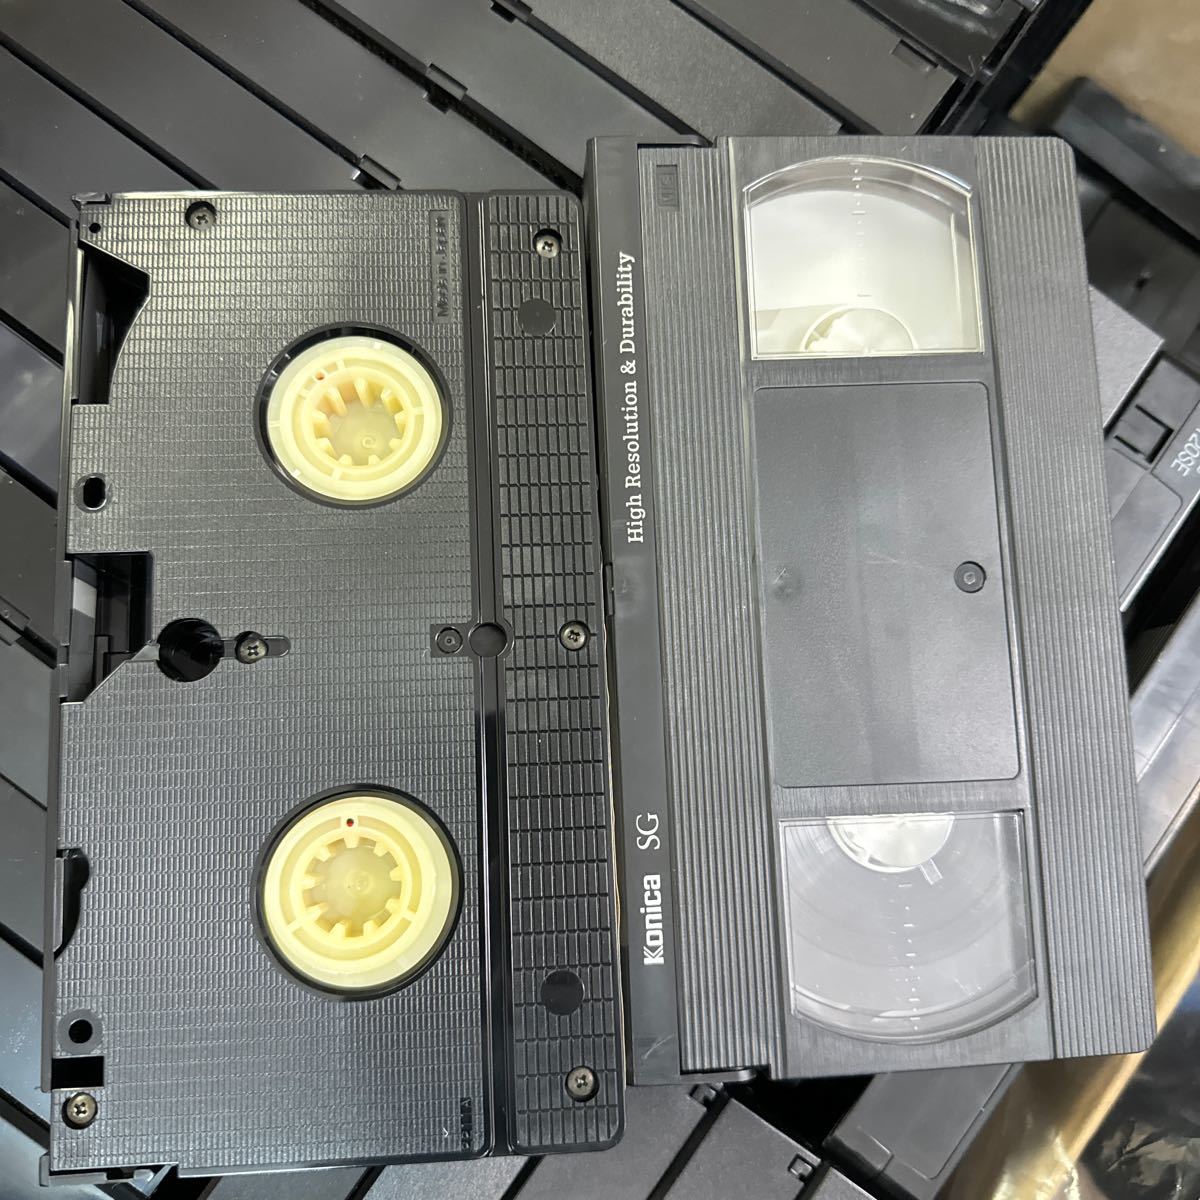 ◆⑬使用済み VHS ビデオテープ 大量まとめ売り 約100本以上 中古 録画済み ケースなし 本体のみ ダビング 上書き 再生未確認 145-21_画像4